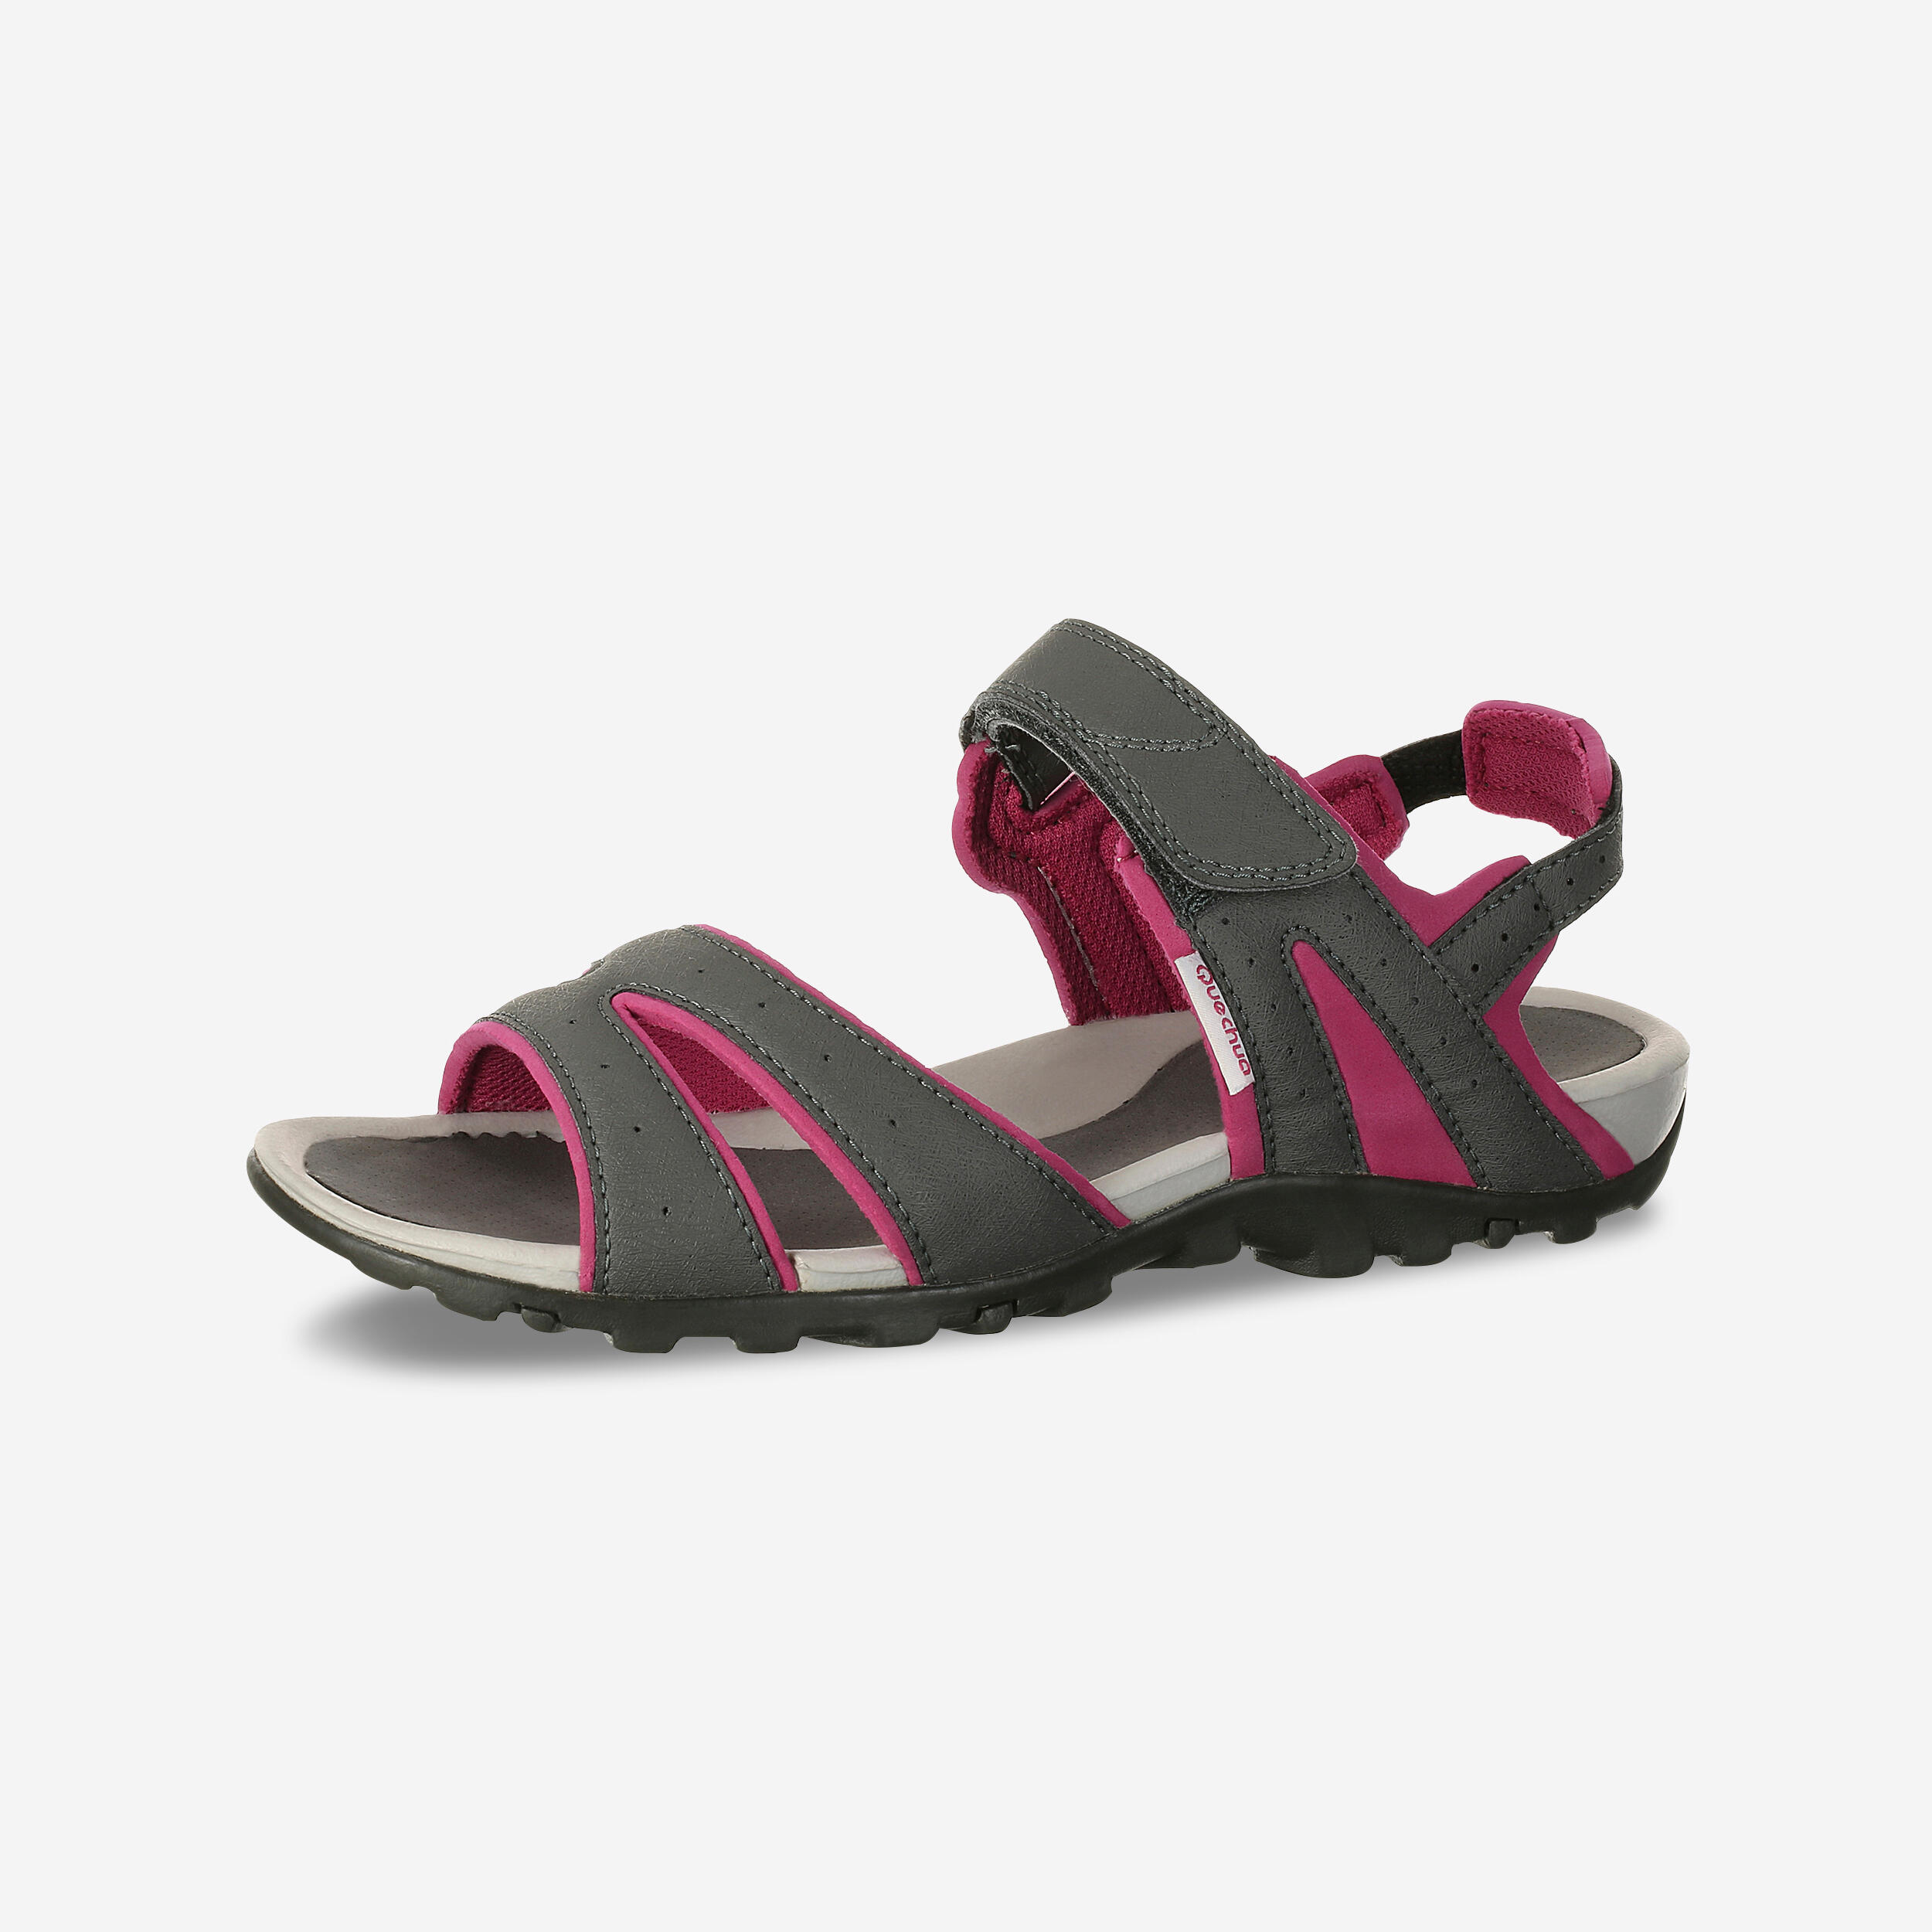 Buy Sandals Online | Decathlon